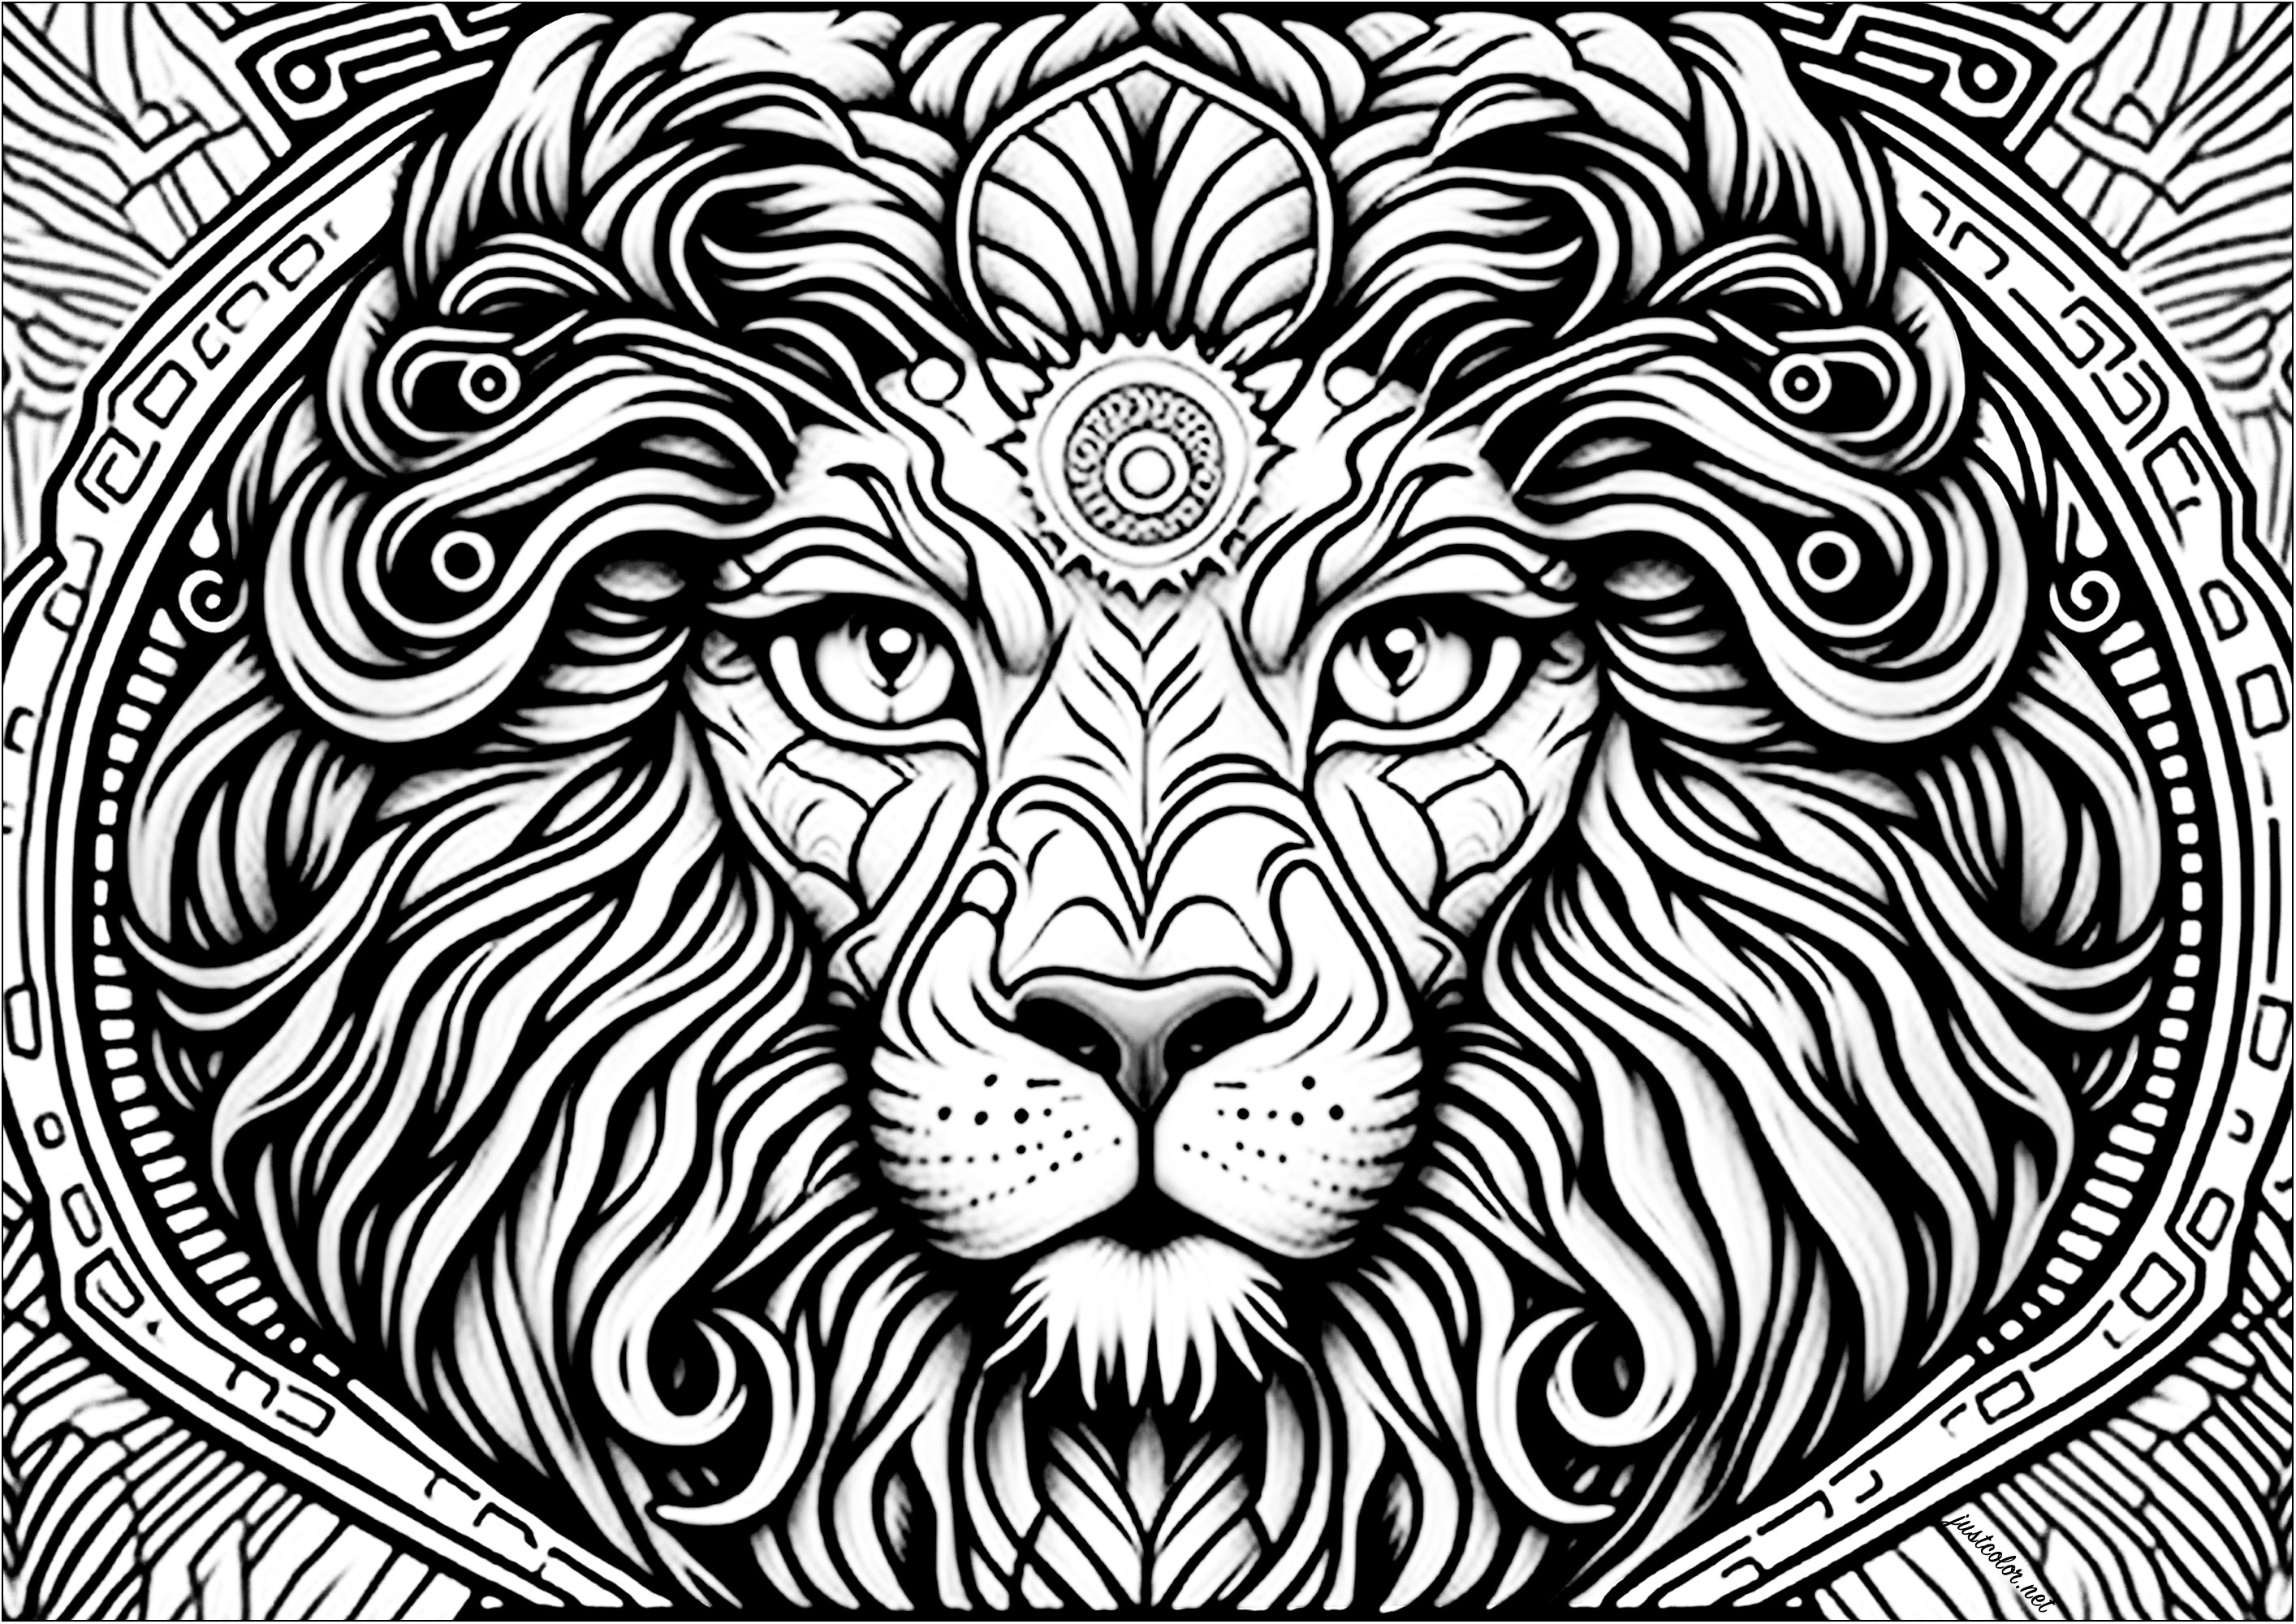 Cabeza de león vista de frente, con muchos detalles. Esta bonita página para colorear representa una cabeza de león vista de frente, con muchos detalles.
Los ojos están muy abiertos y la mirada es penetrante. La melena es abundante y ondulada, y se funde con los detalles abstractos del fondo.